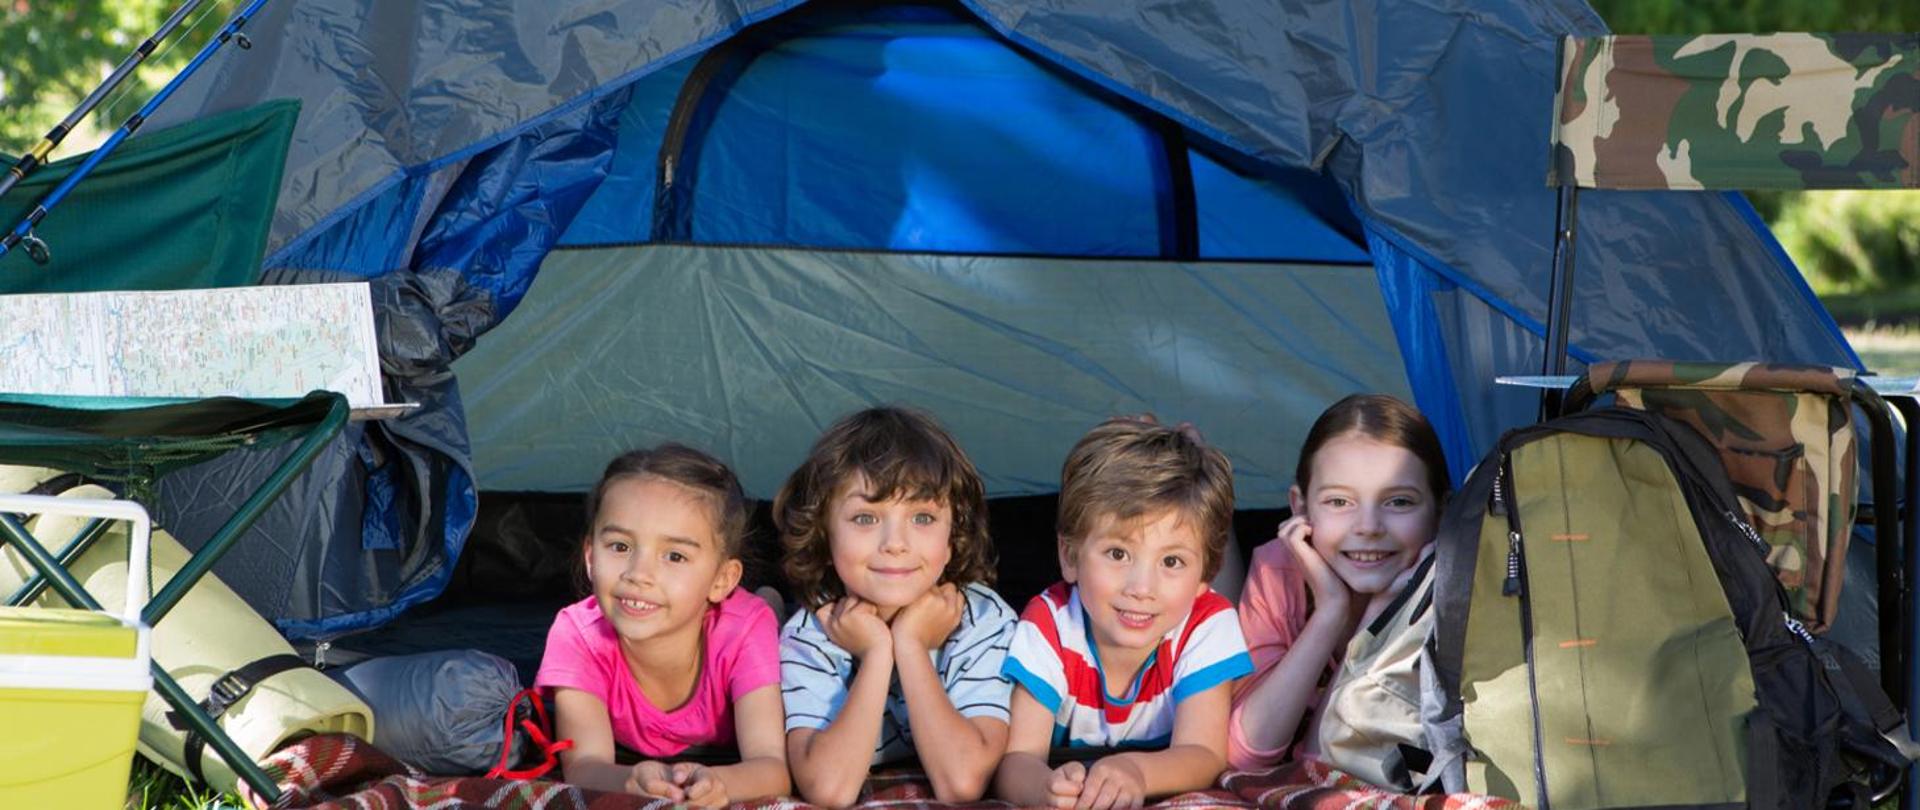 Na zdjęciu czwórka dzieci leżąca w namiocie. Znajdują się prawdopodobnie na obozie, są szczęśliwe i uśmiechnięte. 